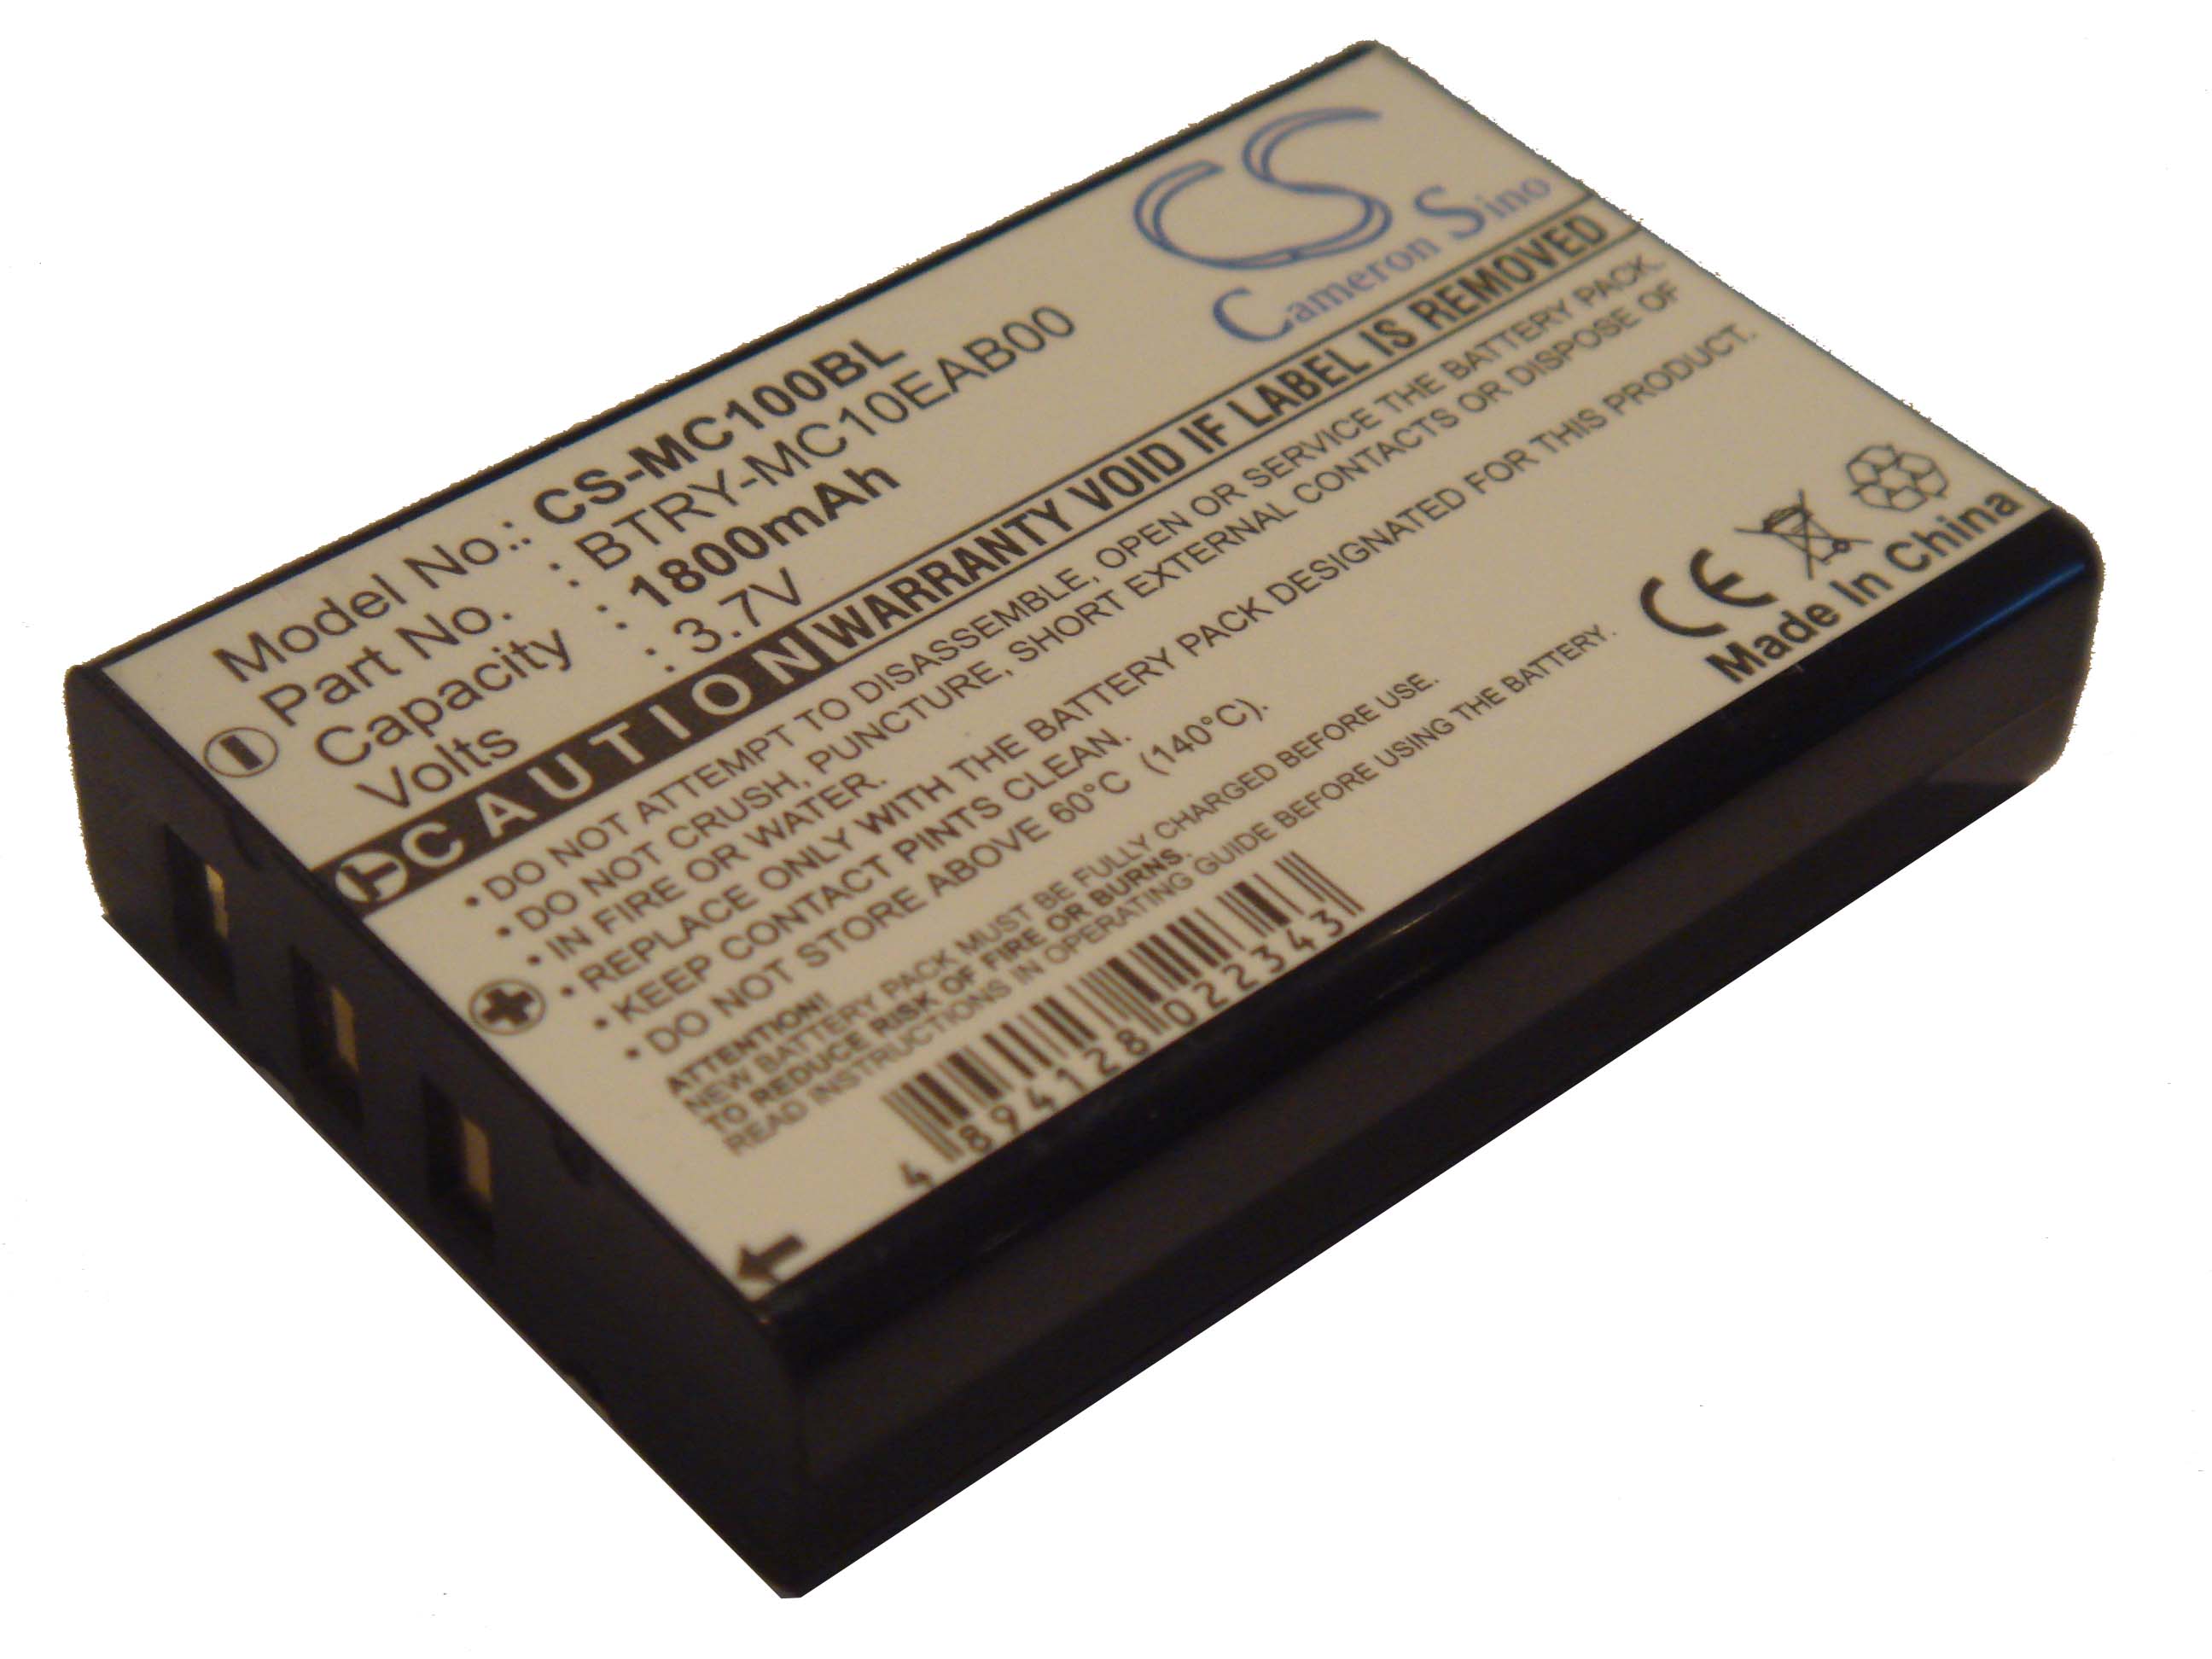 Batterie remplace Intermec 73659, 074337S pour scanner de code-barre - 1600mAh 3,6V Li-ion